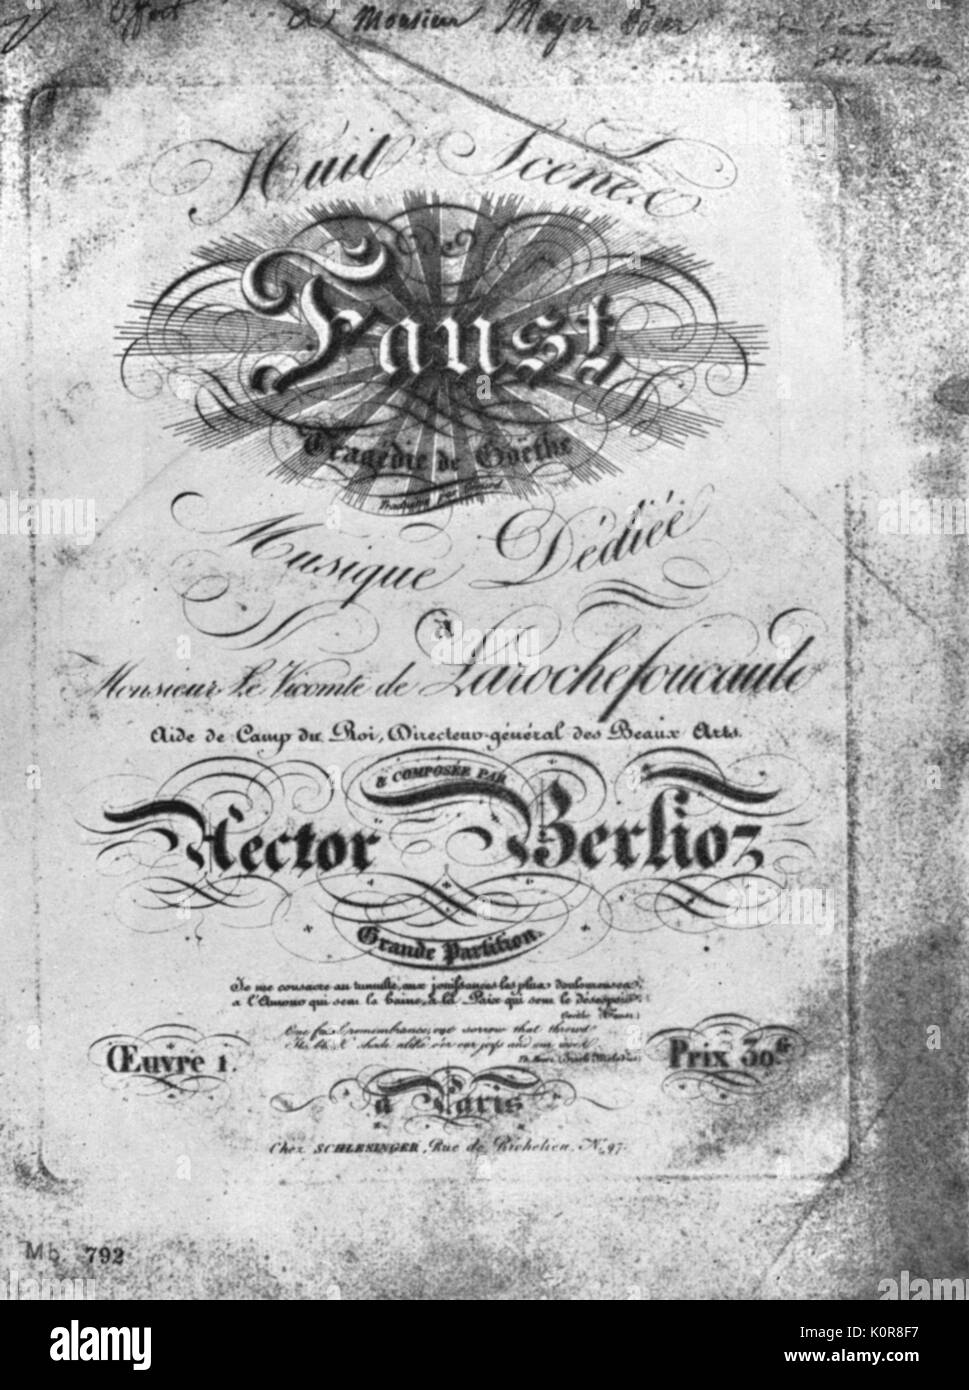 Hector Berlioz - Faust : Titolo della pagina di opus I. Il compositore francese, 11 Dicembre 1803 - 8 marzo 1869. 8 scene di Faust. Dopo Goethe 's poesia. Con una dedica manoscritta di Meyerbeer. Foto Stock